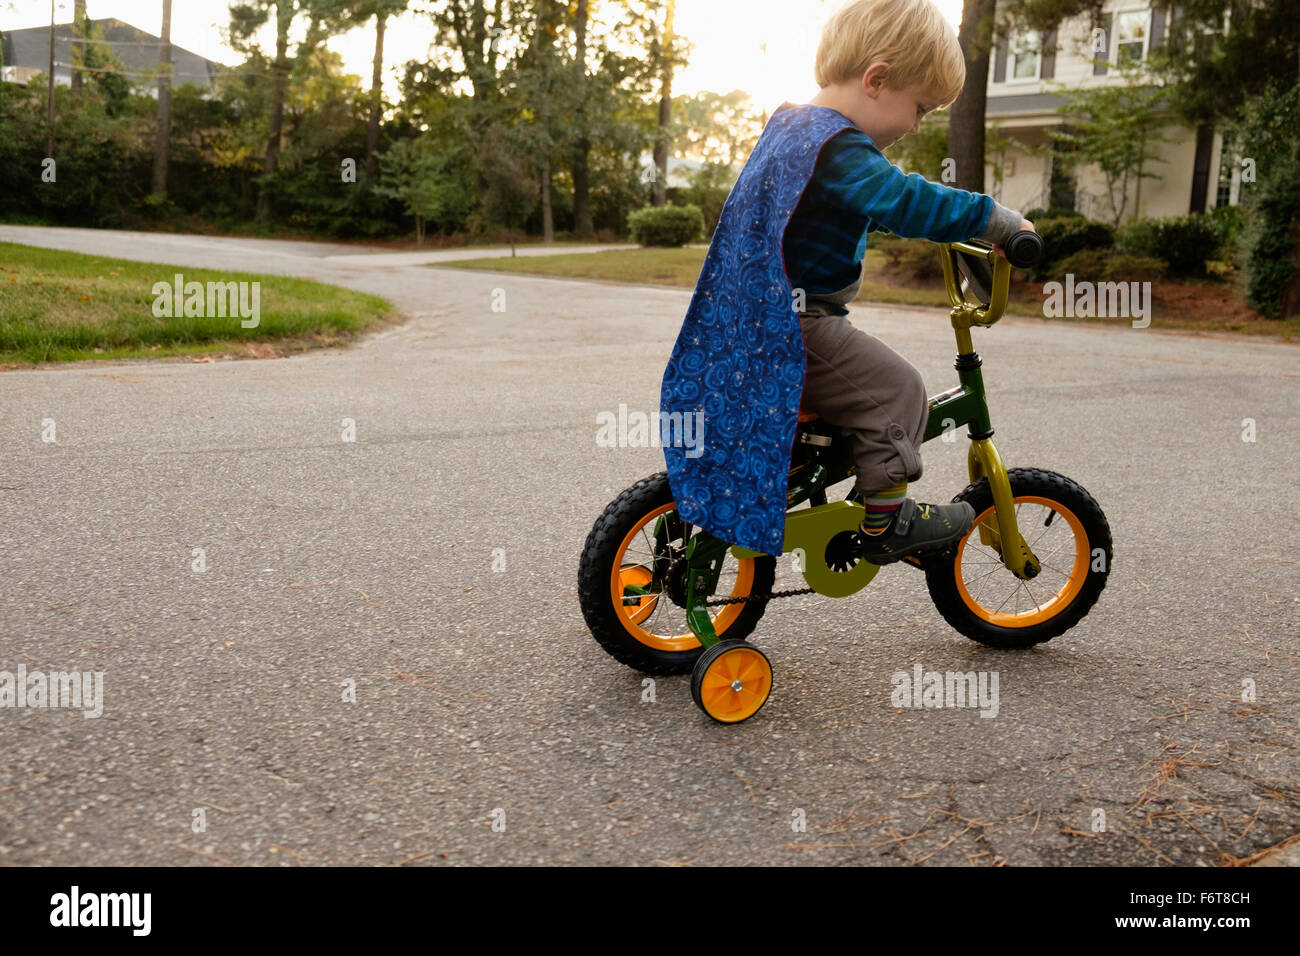 Caucasian boy riding bicycle avec roues de formation Banque D'Images